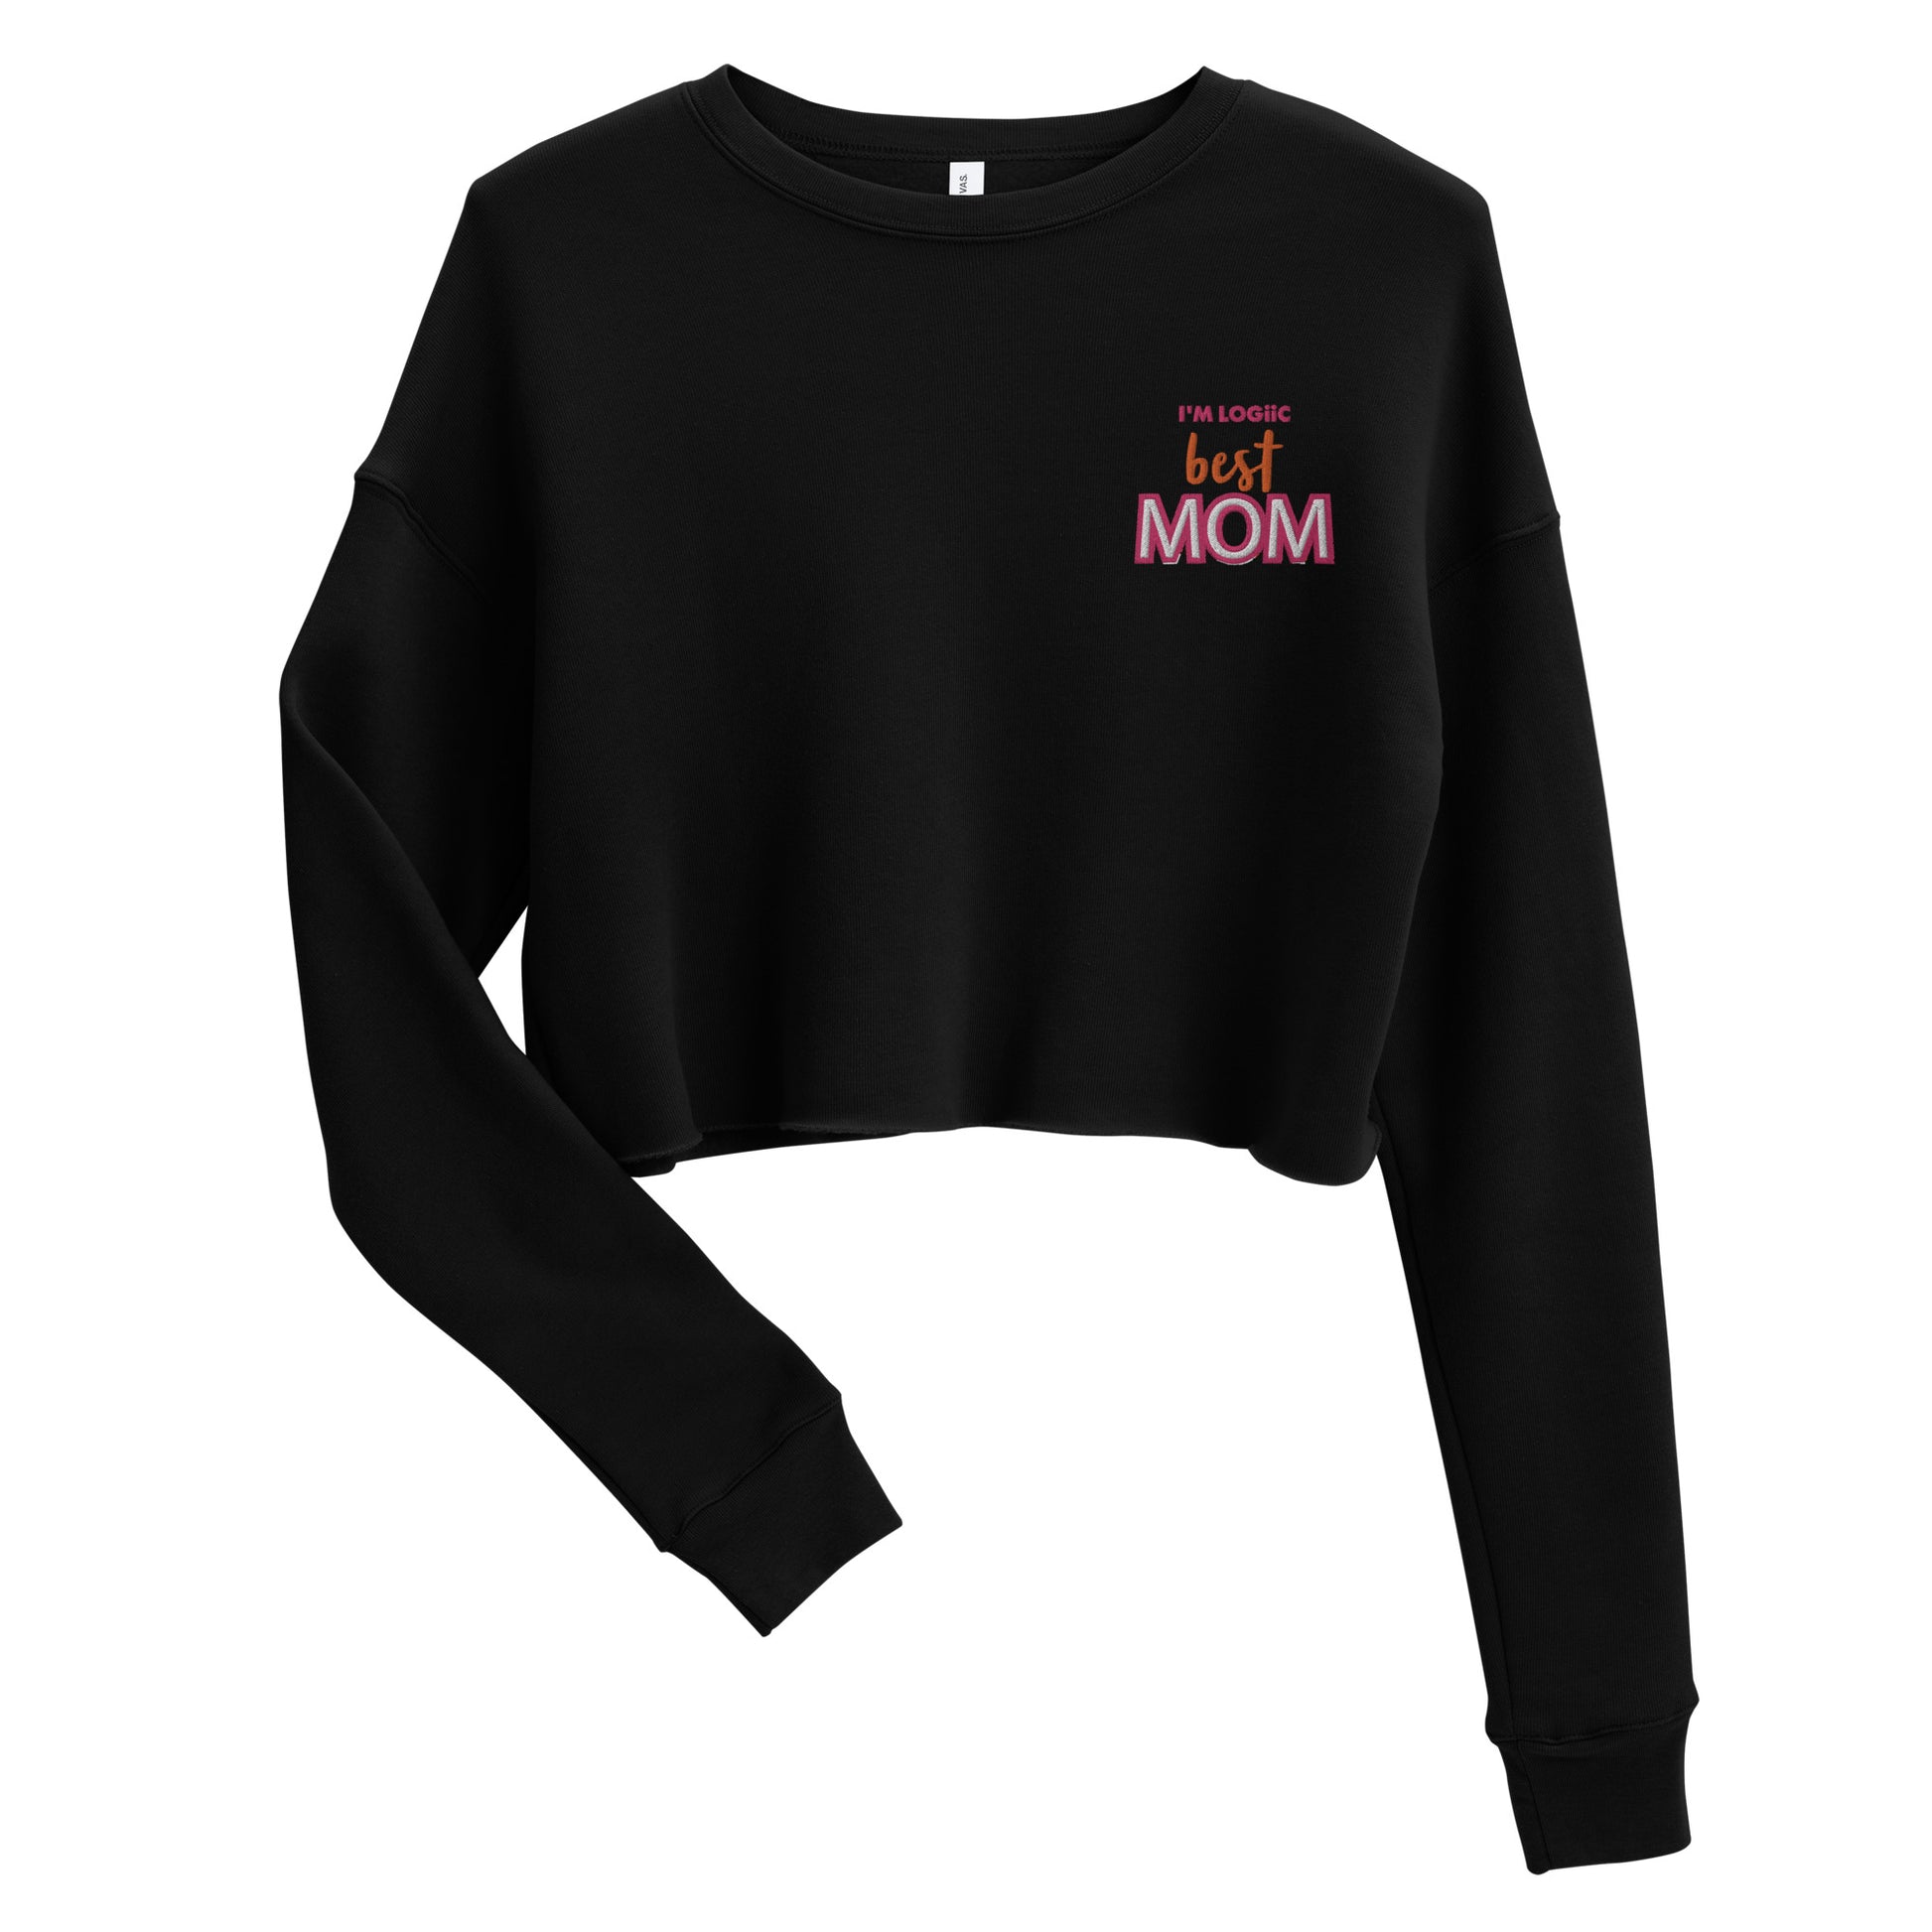 Best MOM Crop Sweatshirt